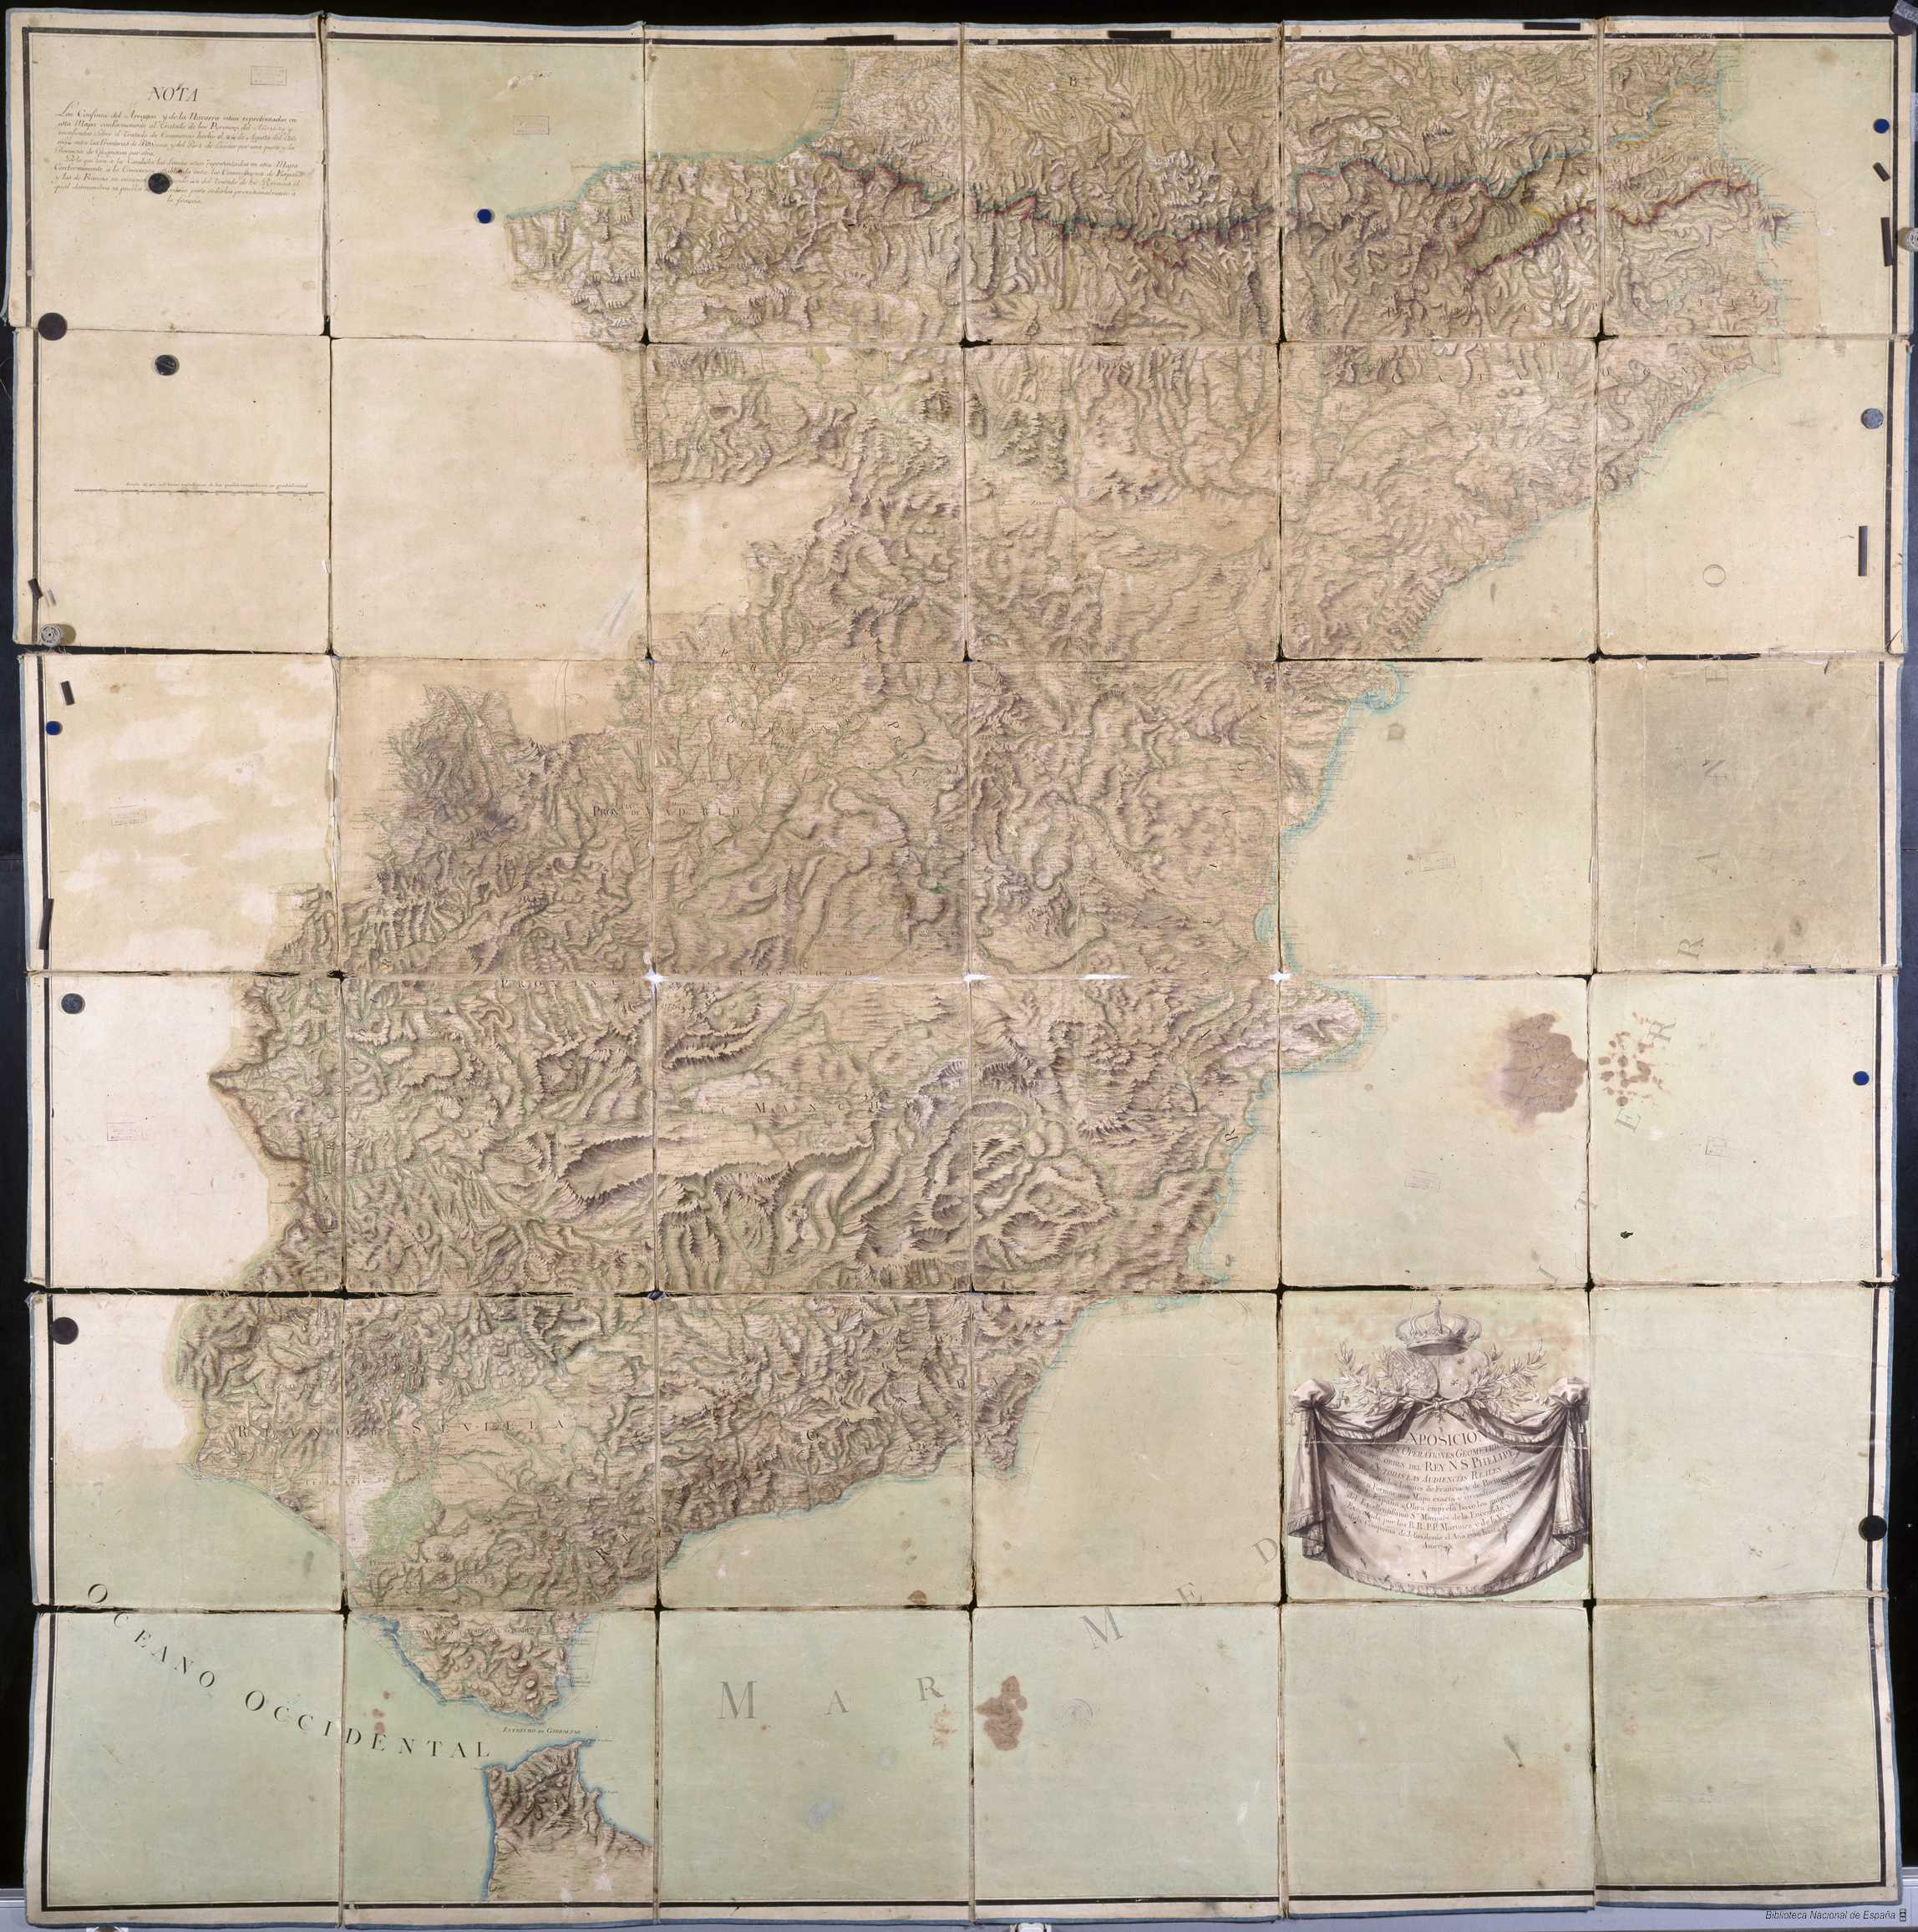 mapa 2